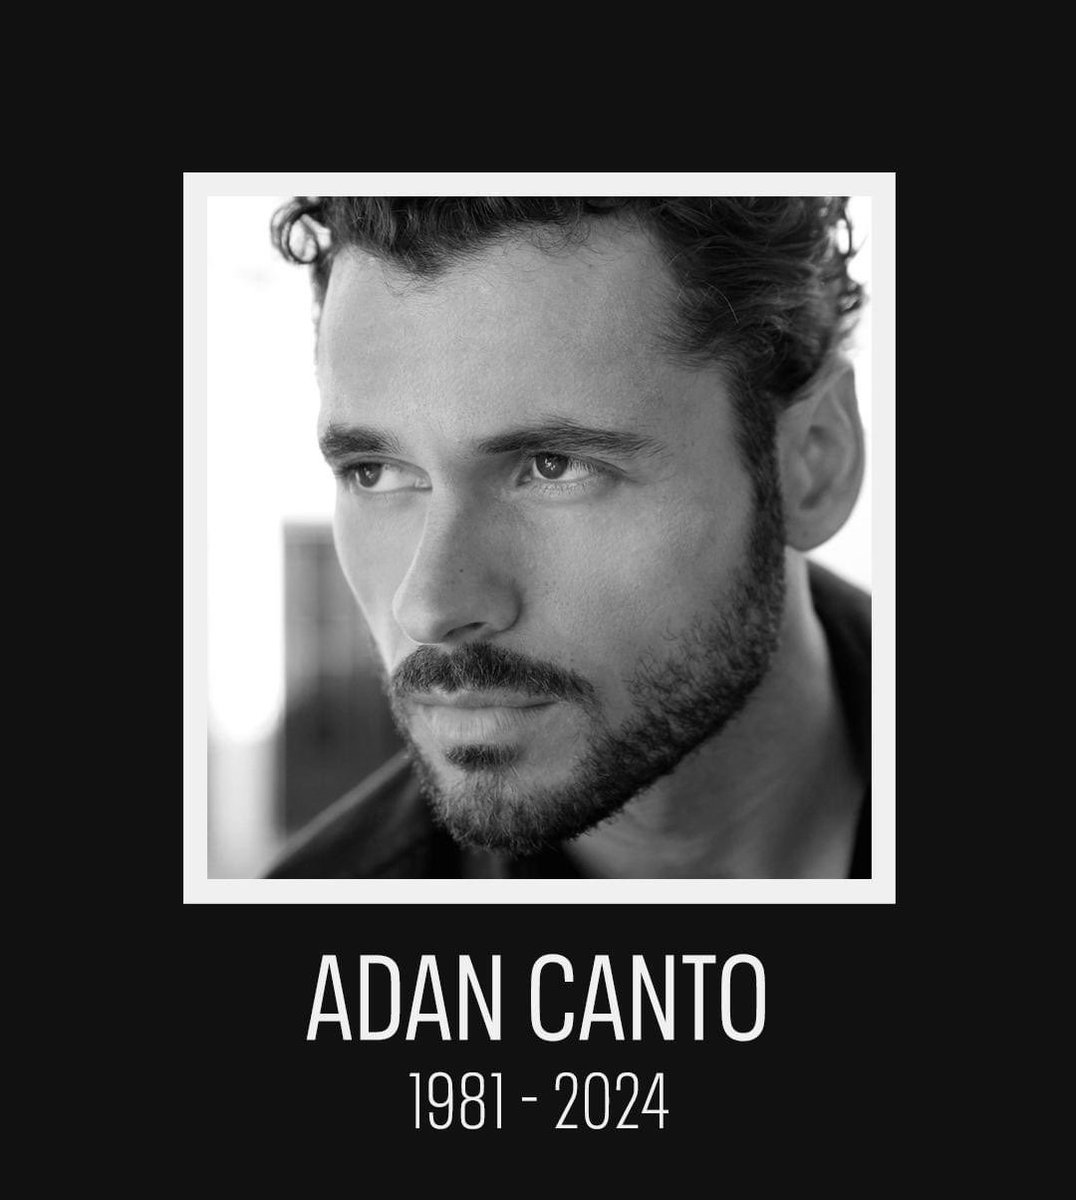 Lamentable pérdida. Un joven gran actor. Un papel estupendo en #DesignatedSurvivor DEP Adan. 🥺